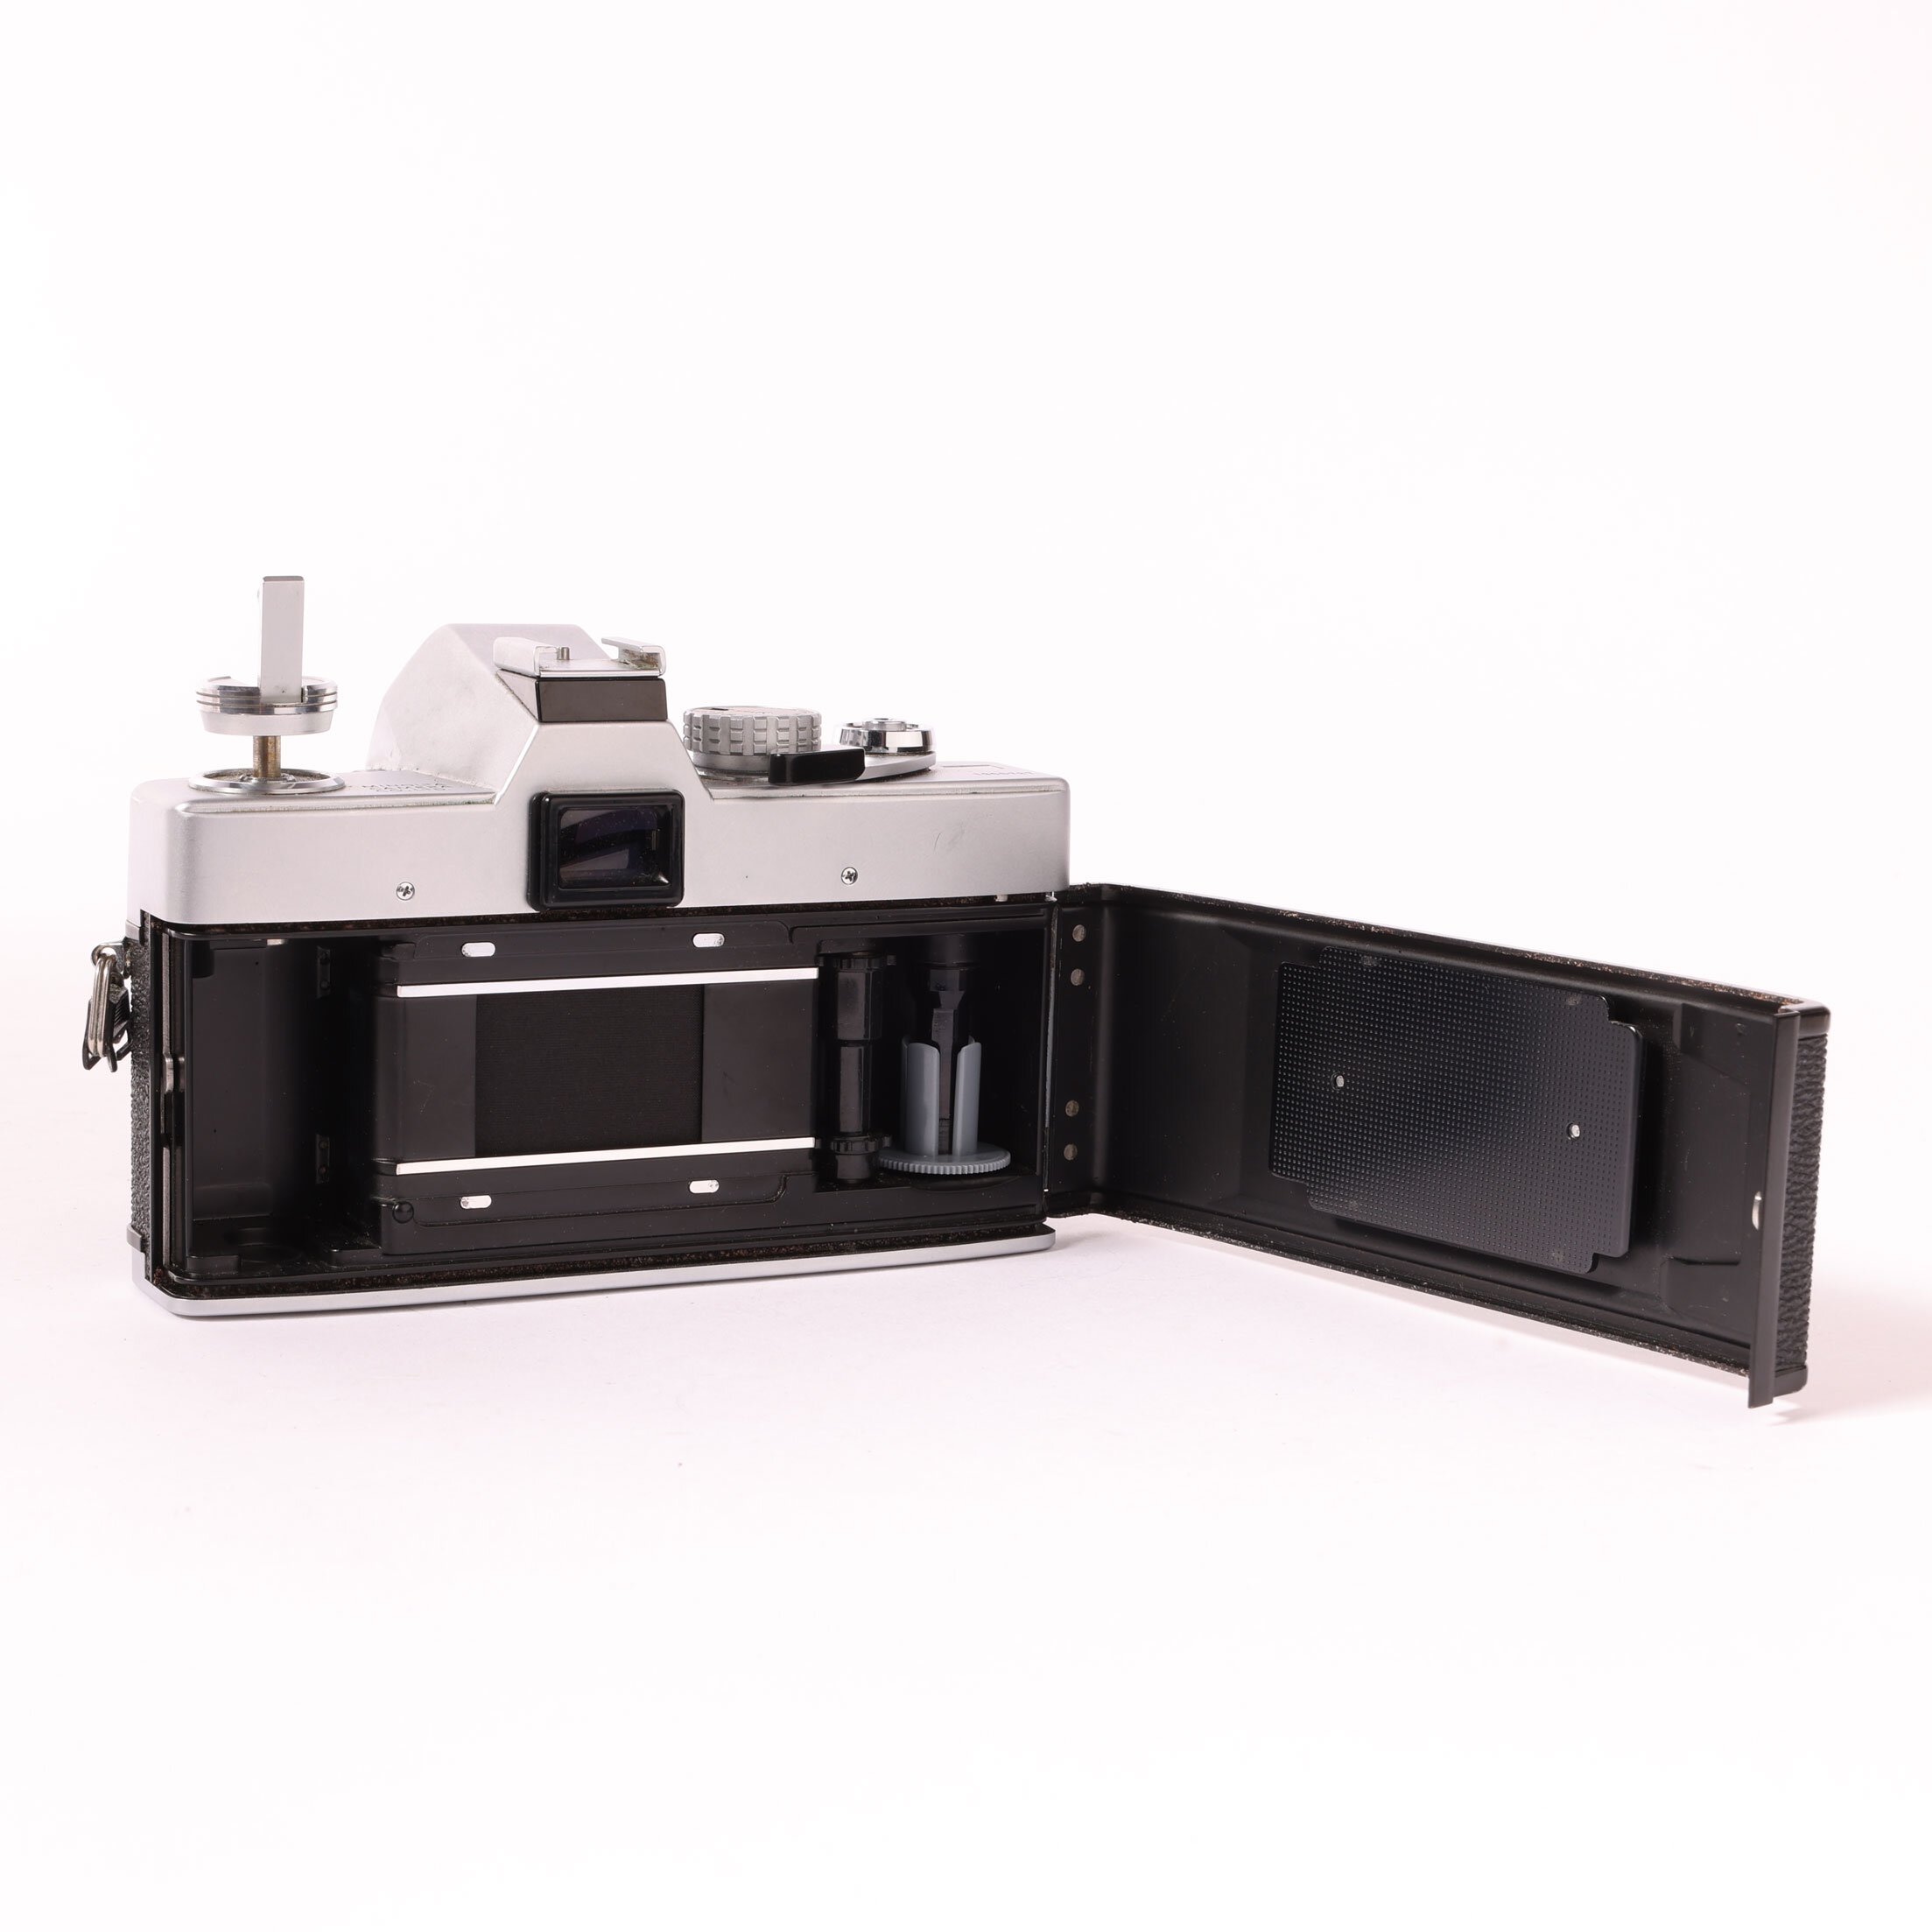 Minolta SRT 101 MD Rokkor 1.7/50mm